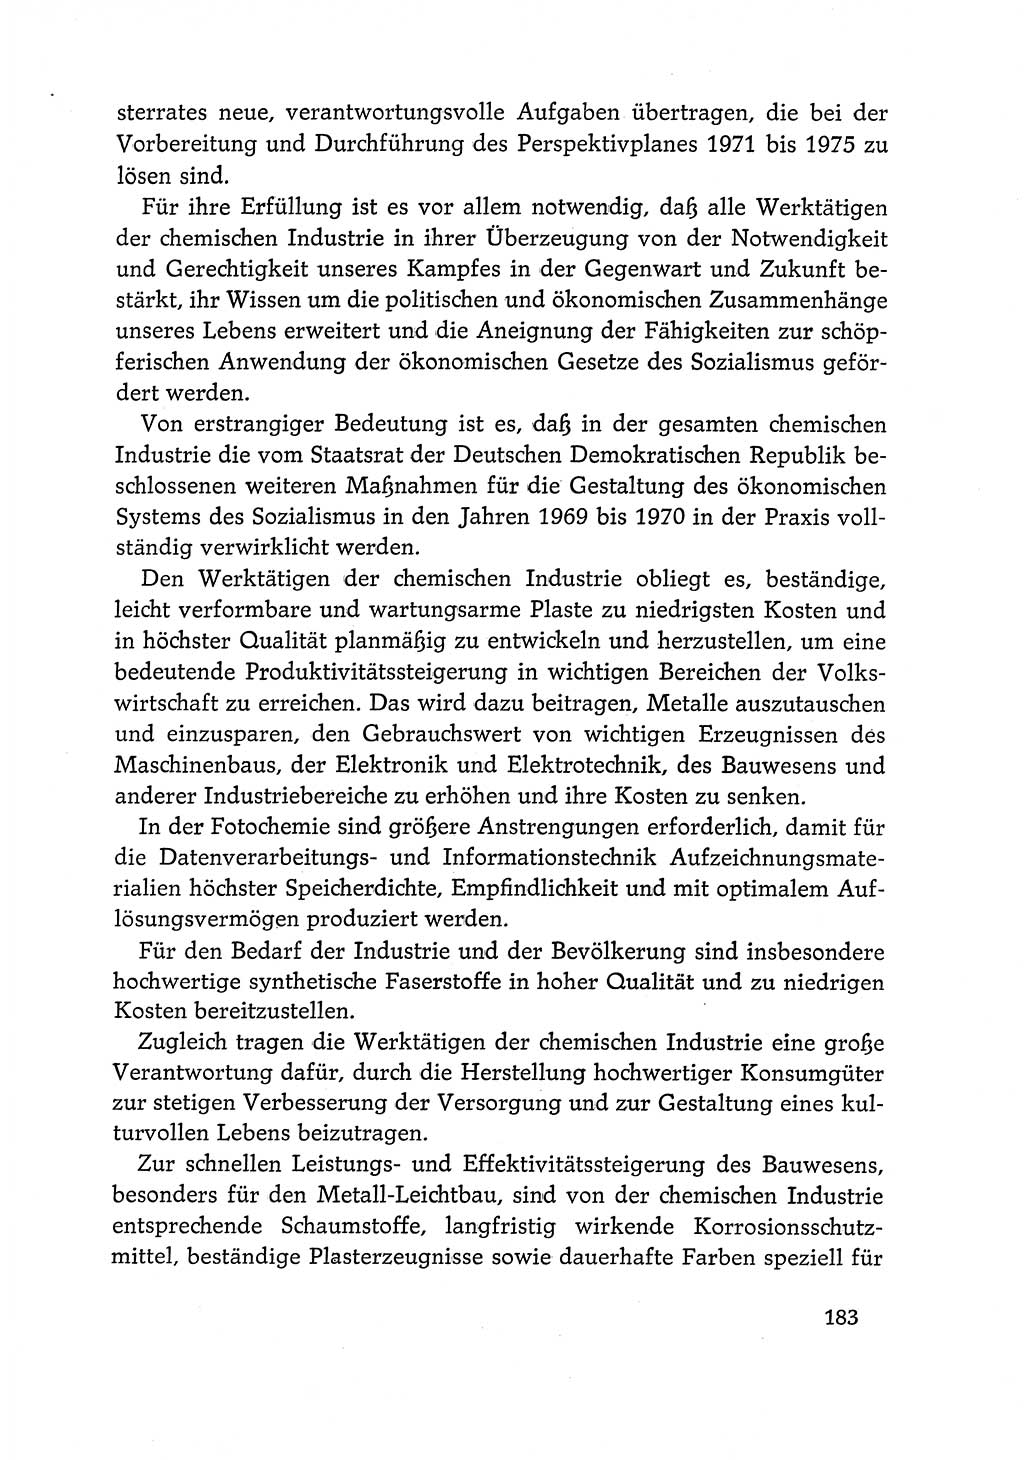 Dokumente der Sozialistischen Einheitspartei Deutschlands (SED) [Deutsche Demokratische Republik (DDR)] 1968-1969, Seite 183 (Dok. SED DDR 1968-1969, S. 183)